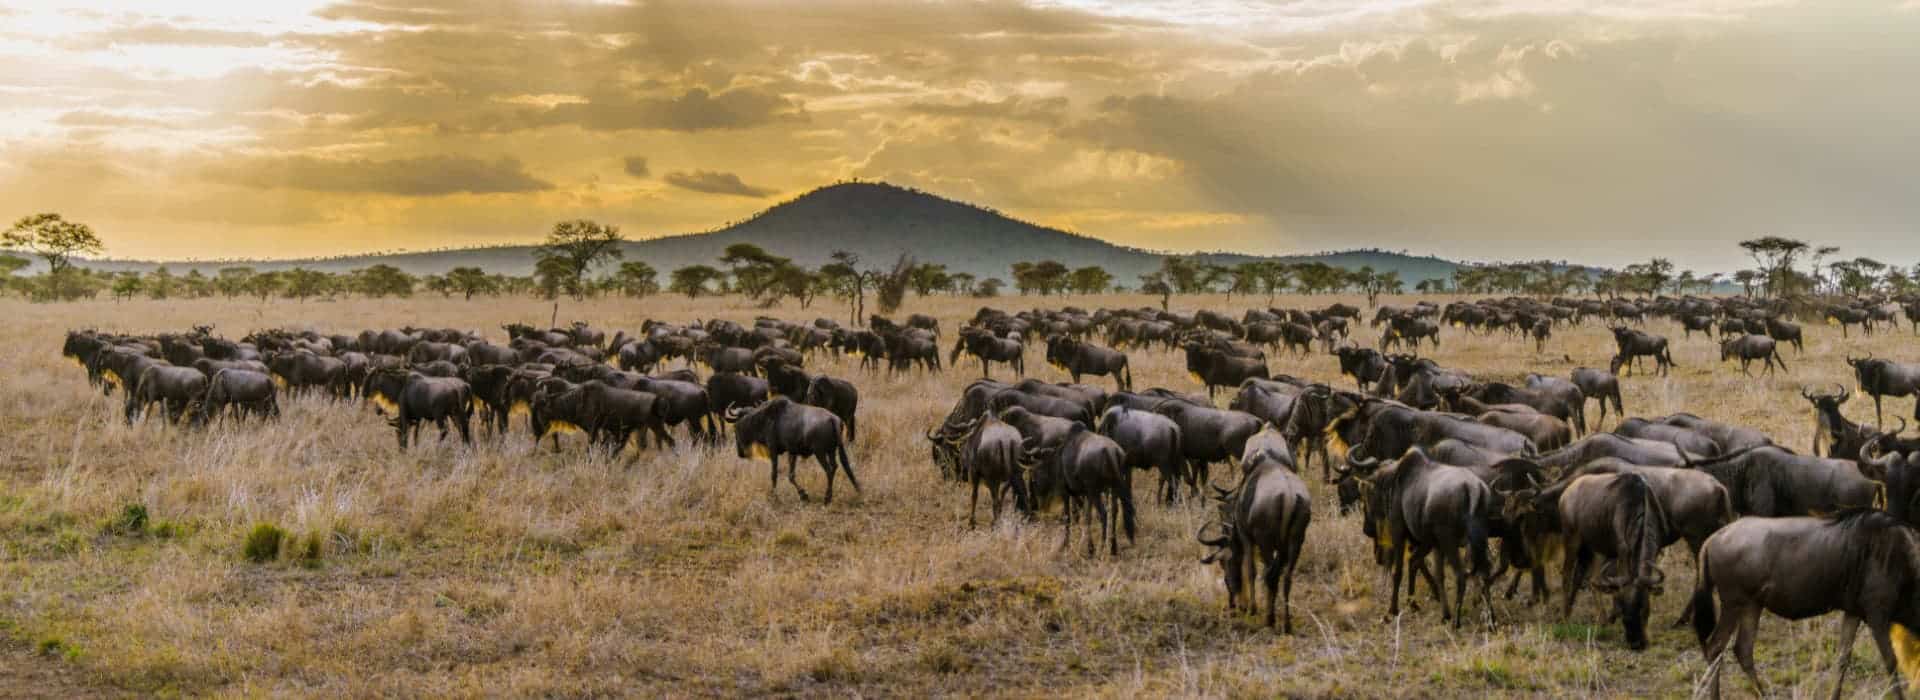 9 Days Bucketlist Migration Safari